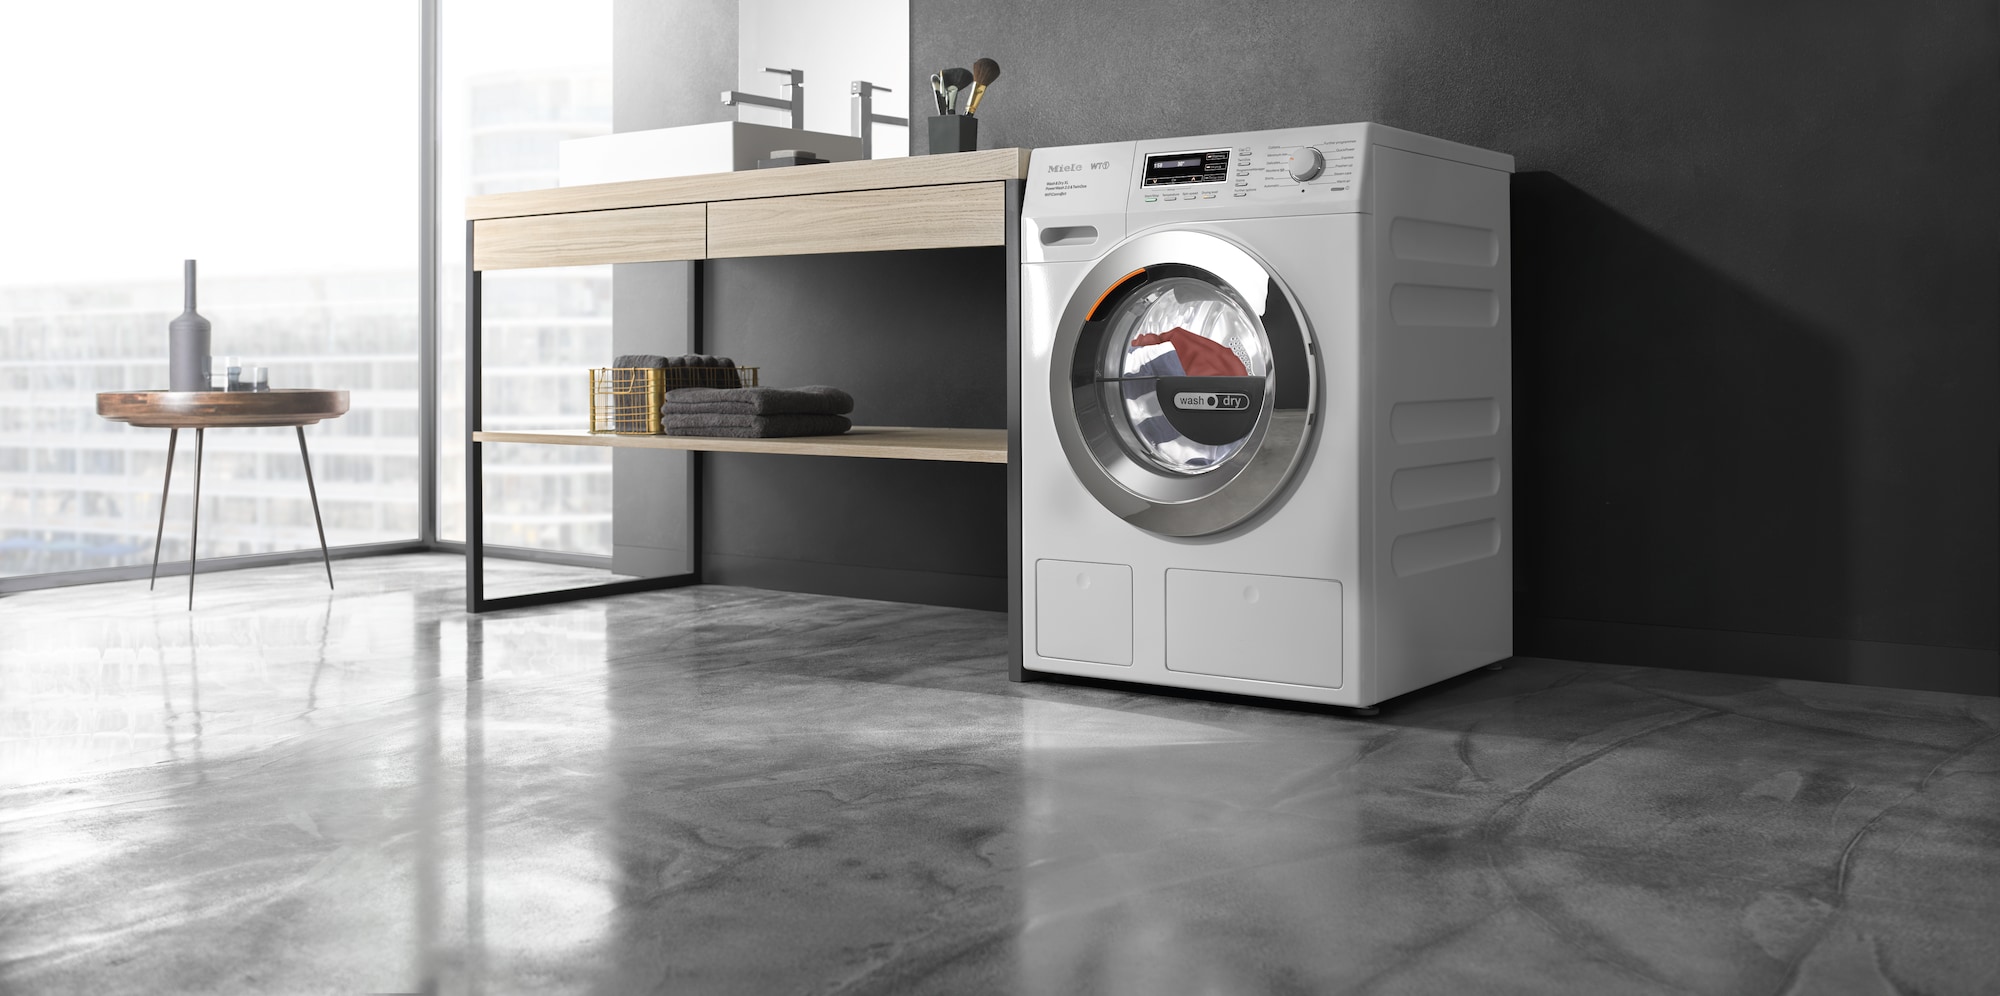 Me interesa comprar una lavadora MIELE que centrifuga hasta a 1.600 rpm? –  Ahorro Diario con los Electrodomésticos